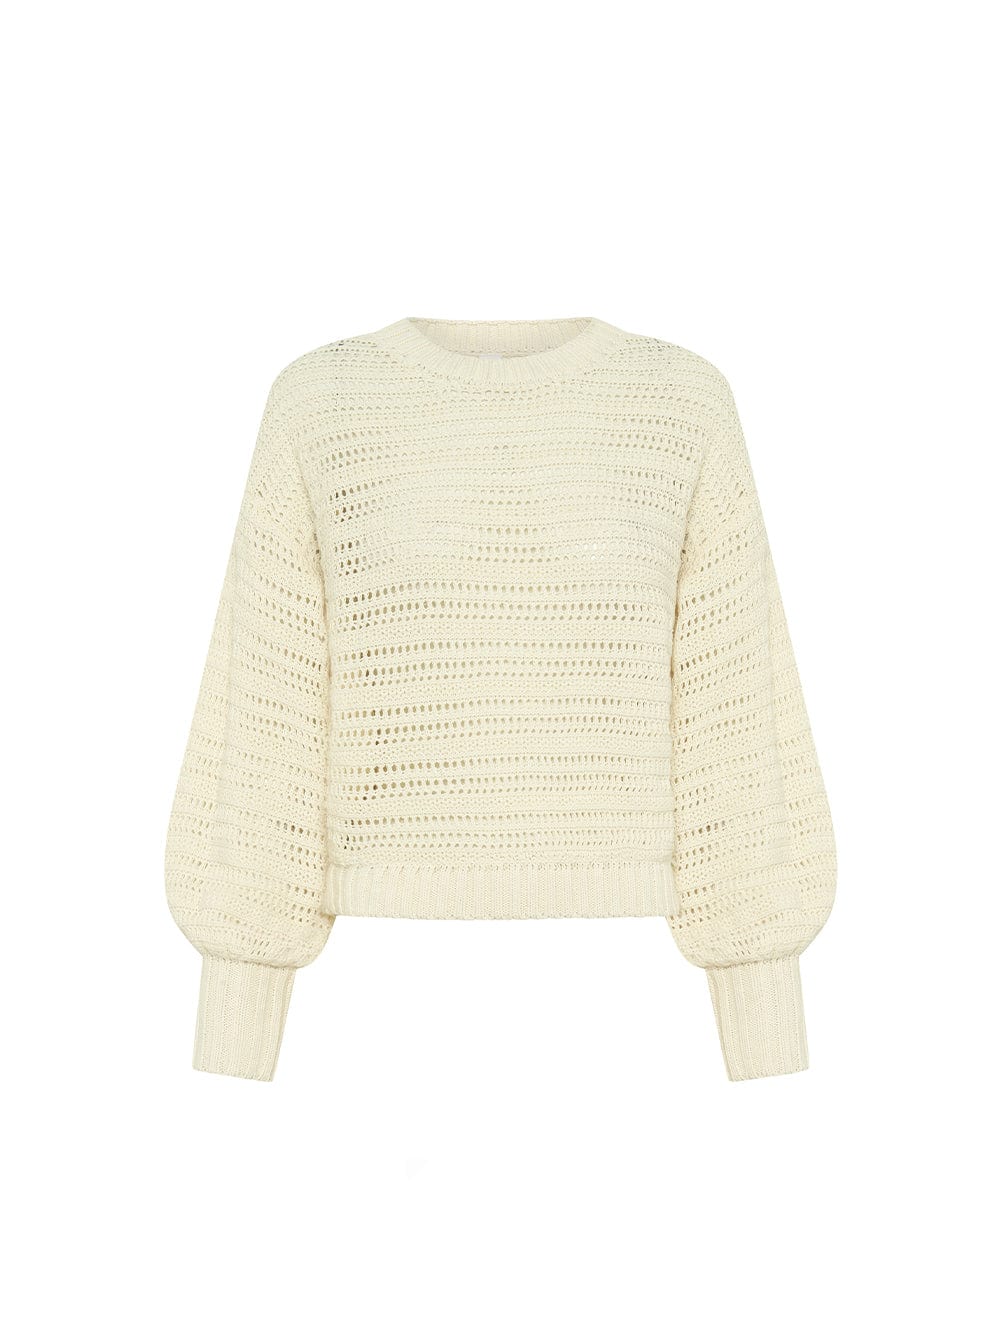 Pepe Knit Sweater